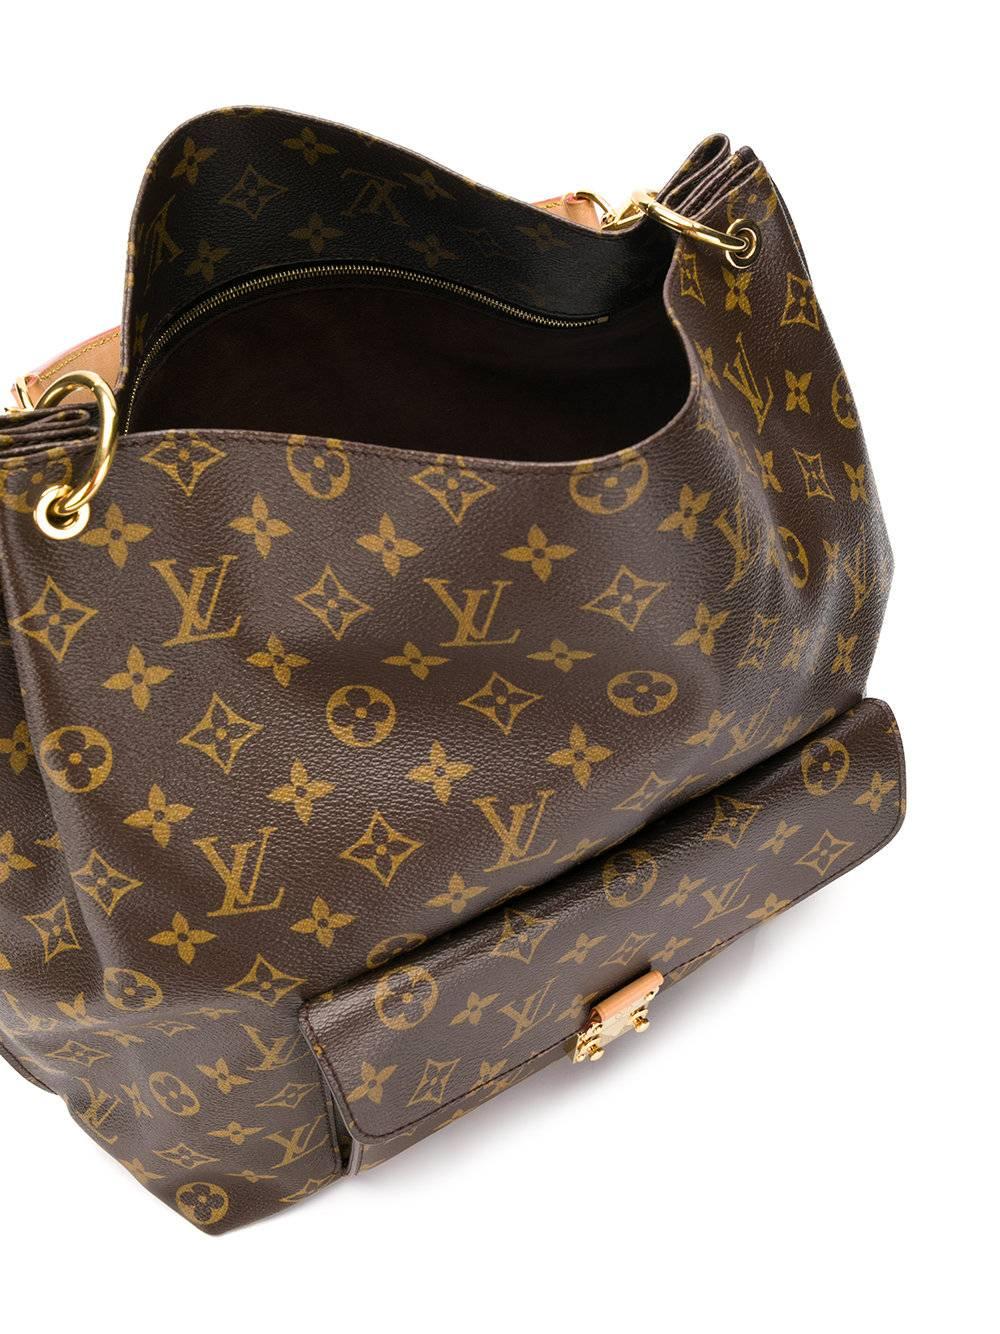 Women's Louis Vuitton Monogram Shoulder Bag